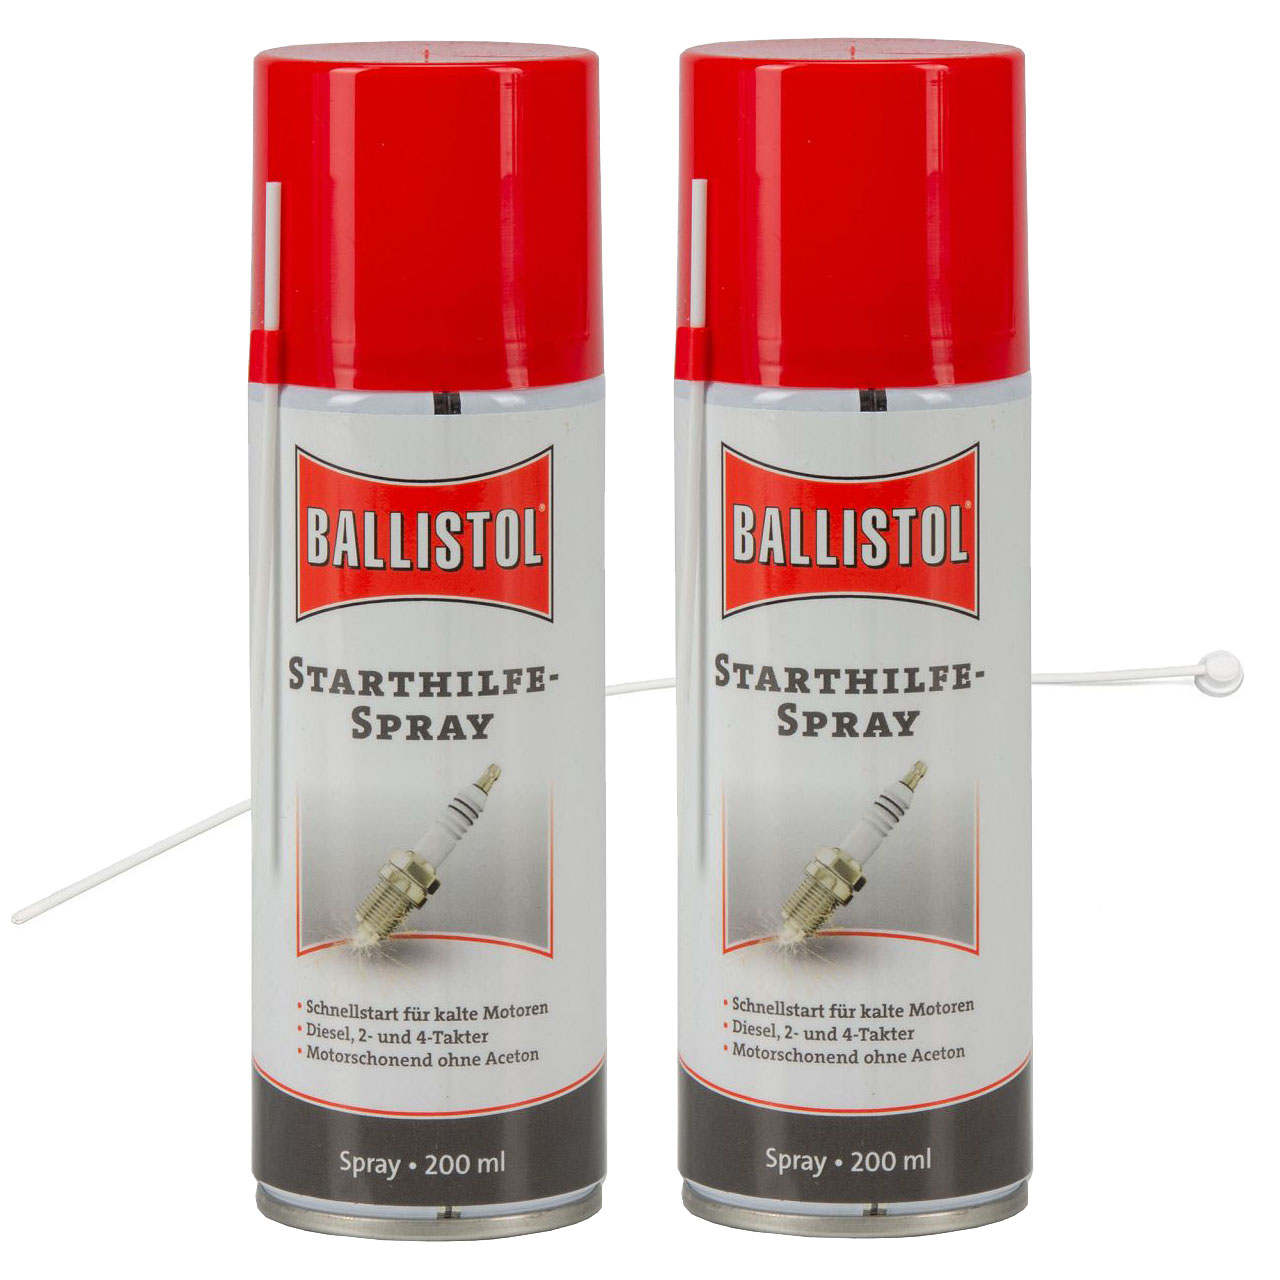 BALLISTOL Startwunder Spray Starthilfespray Starterspray 400ml + Verlängerung